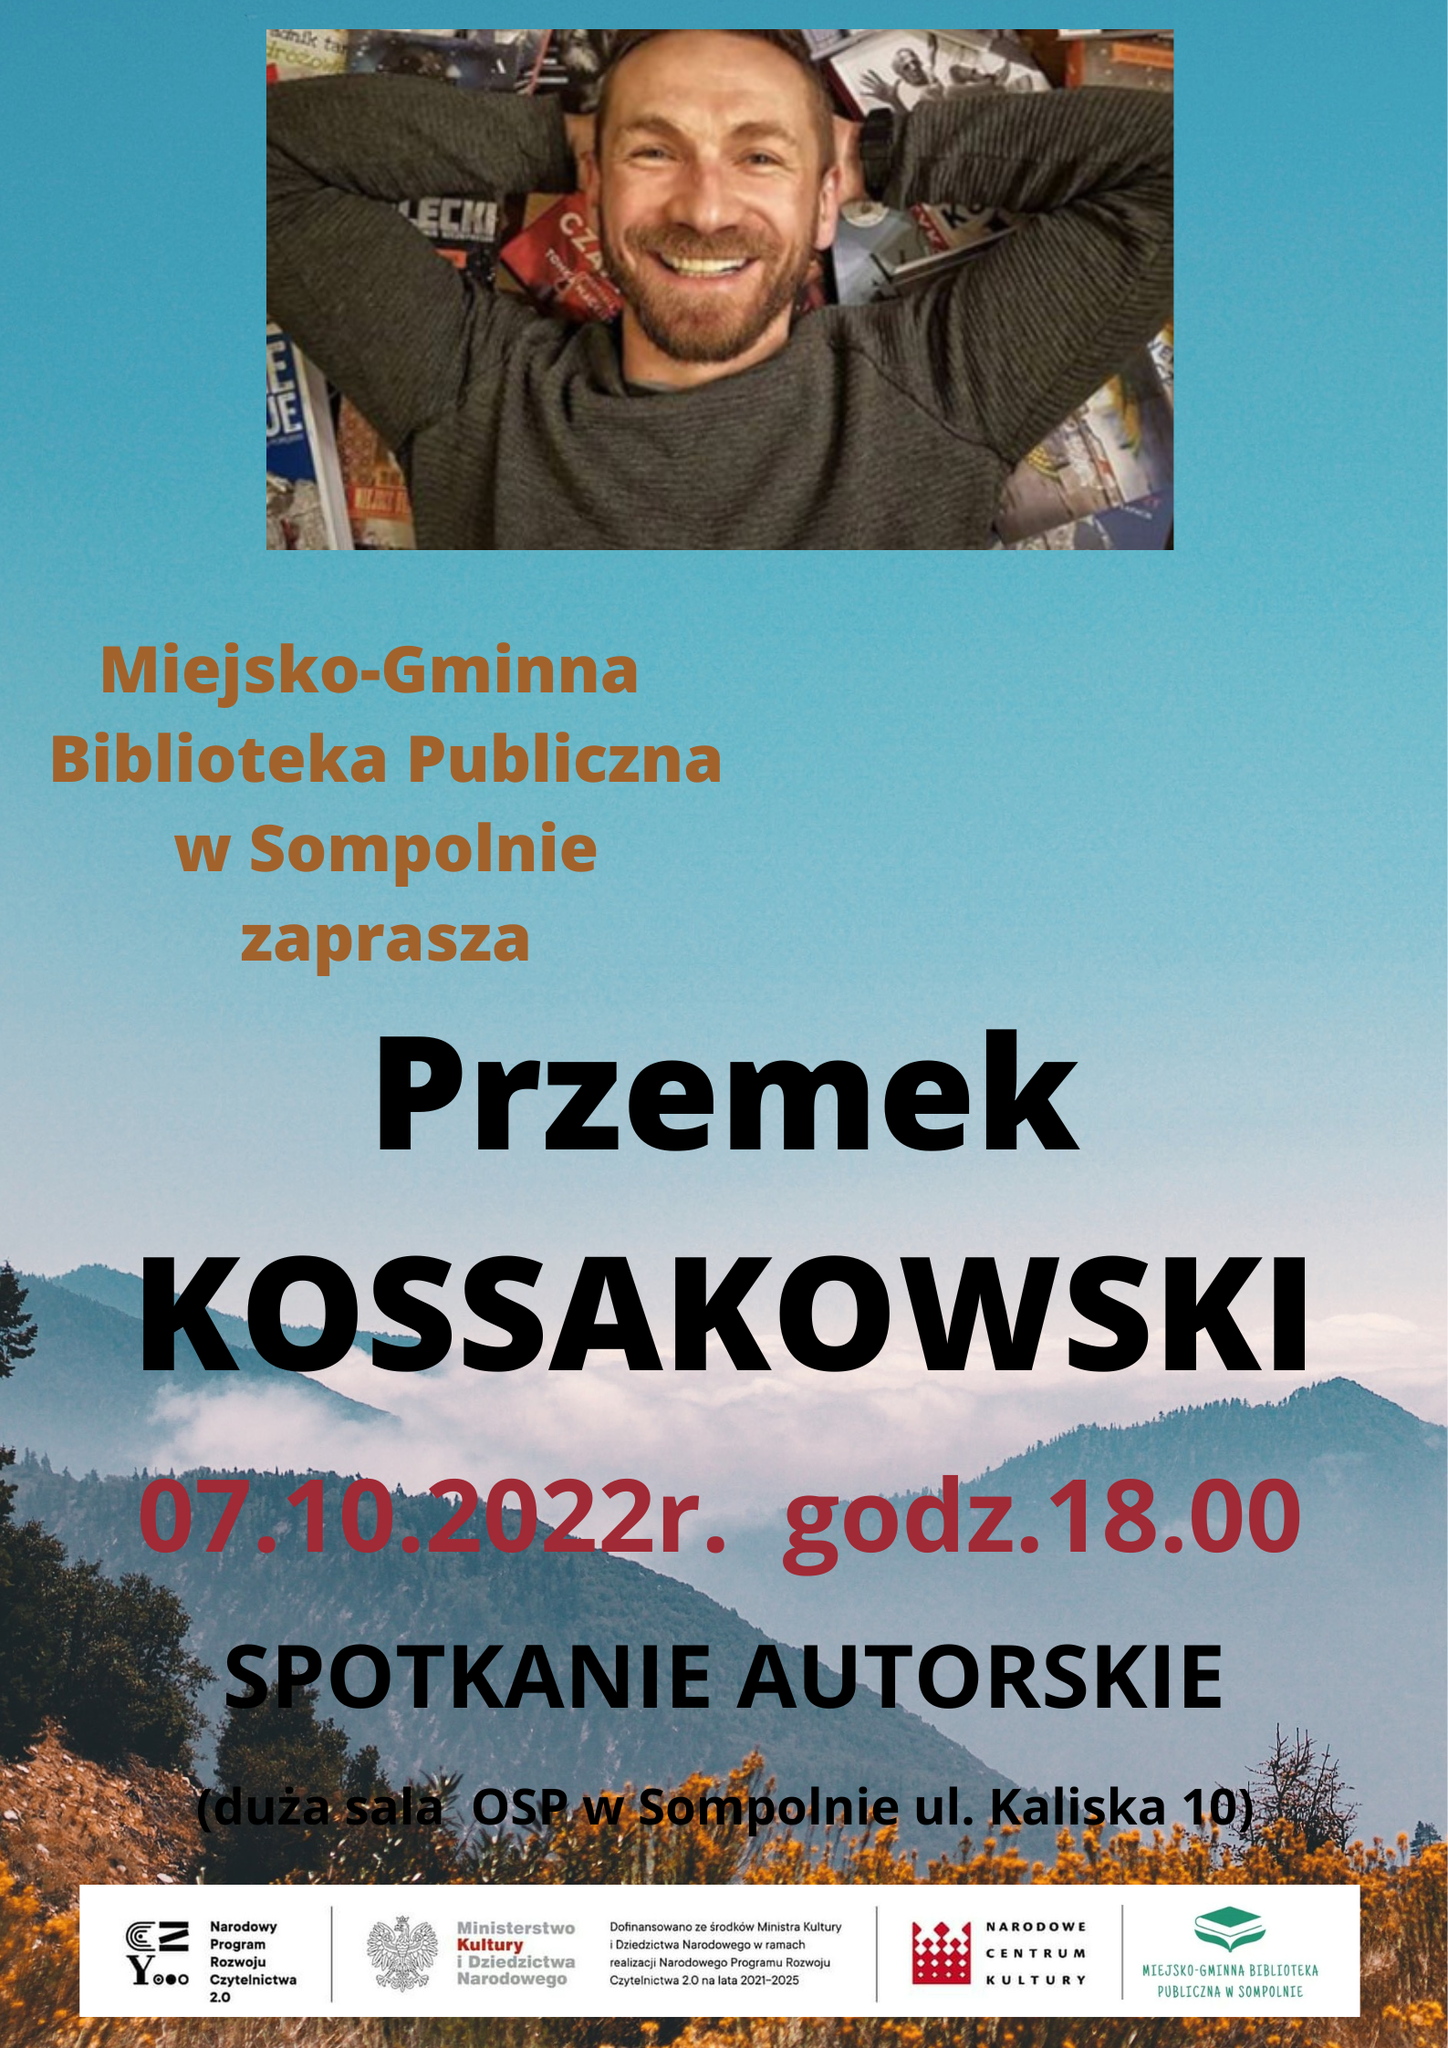 Spotkanie autorskie z Przemkiem Kossakowskim